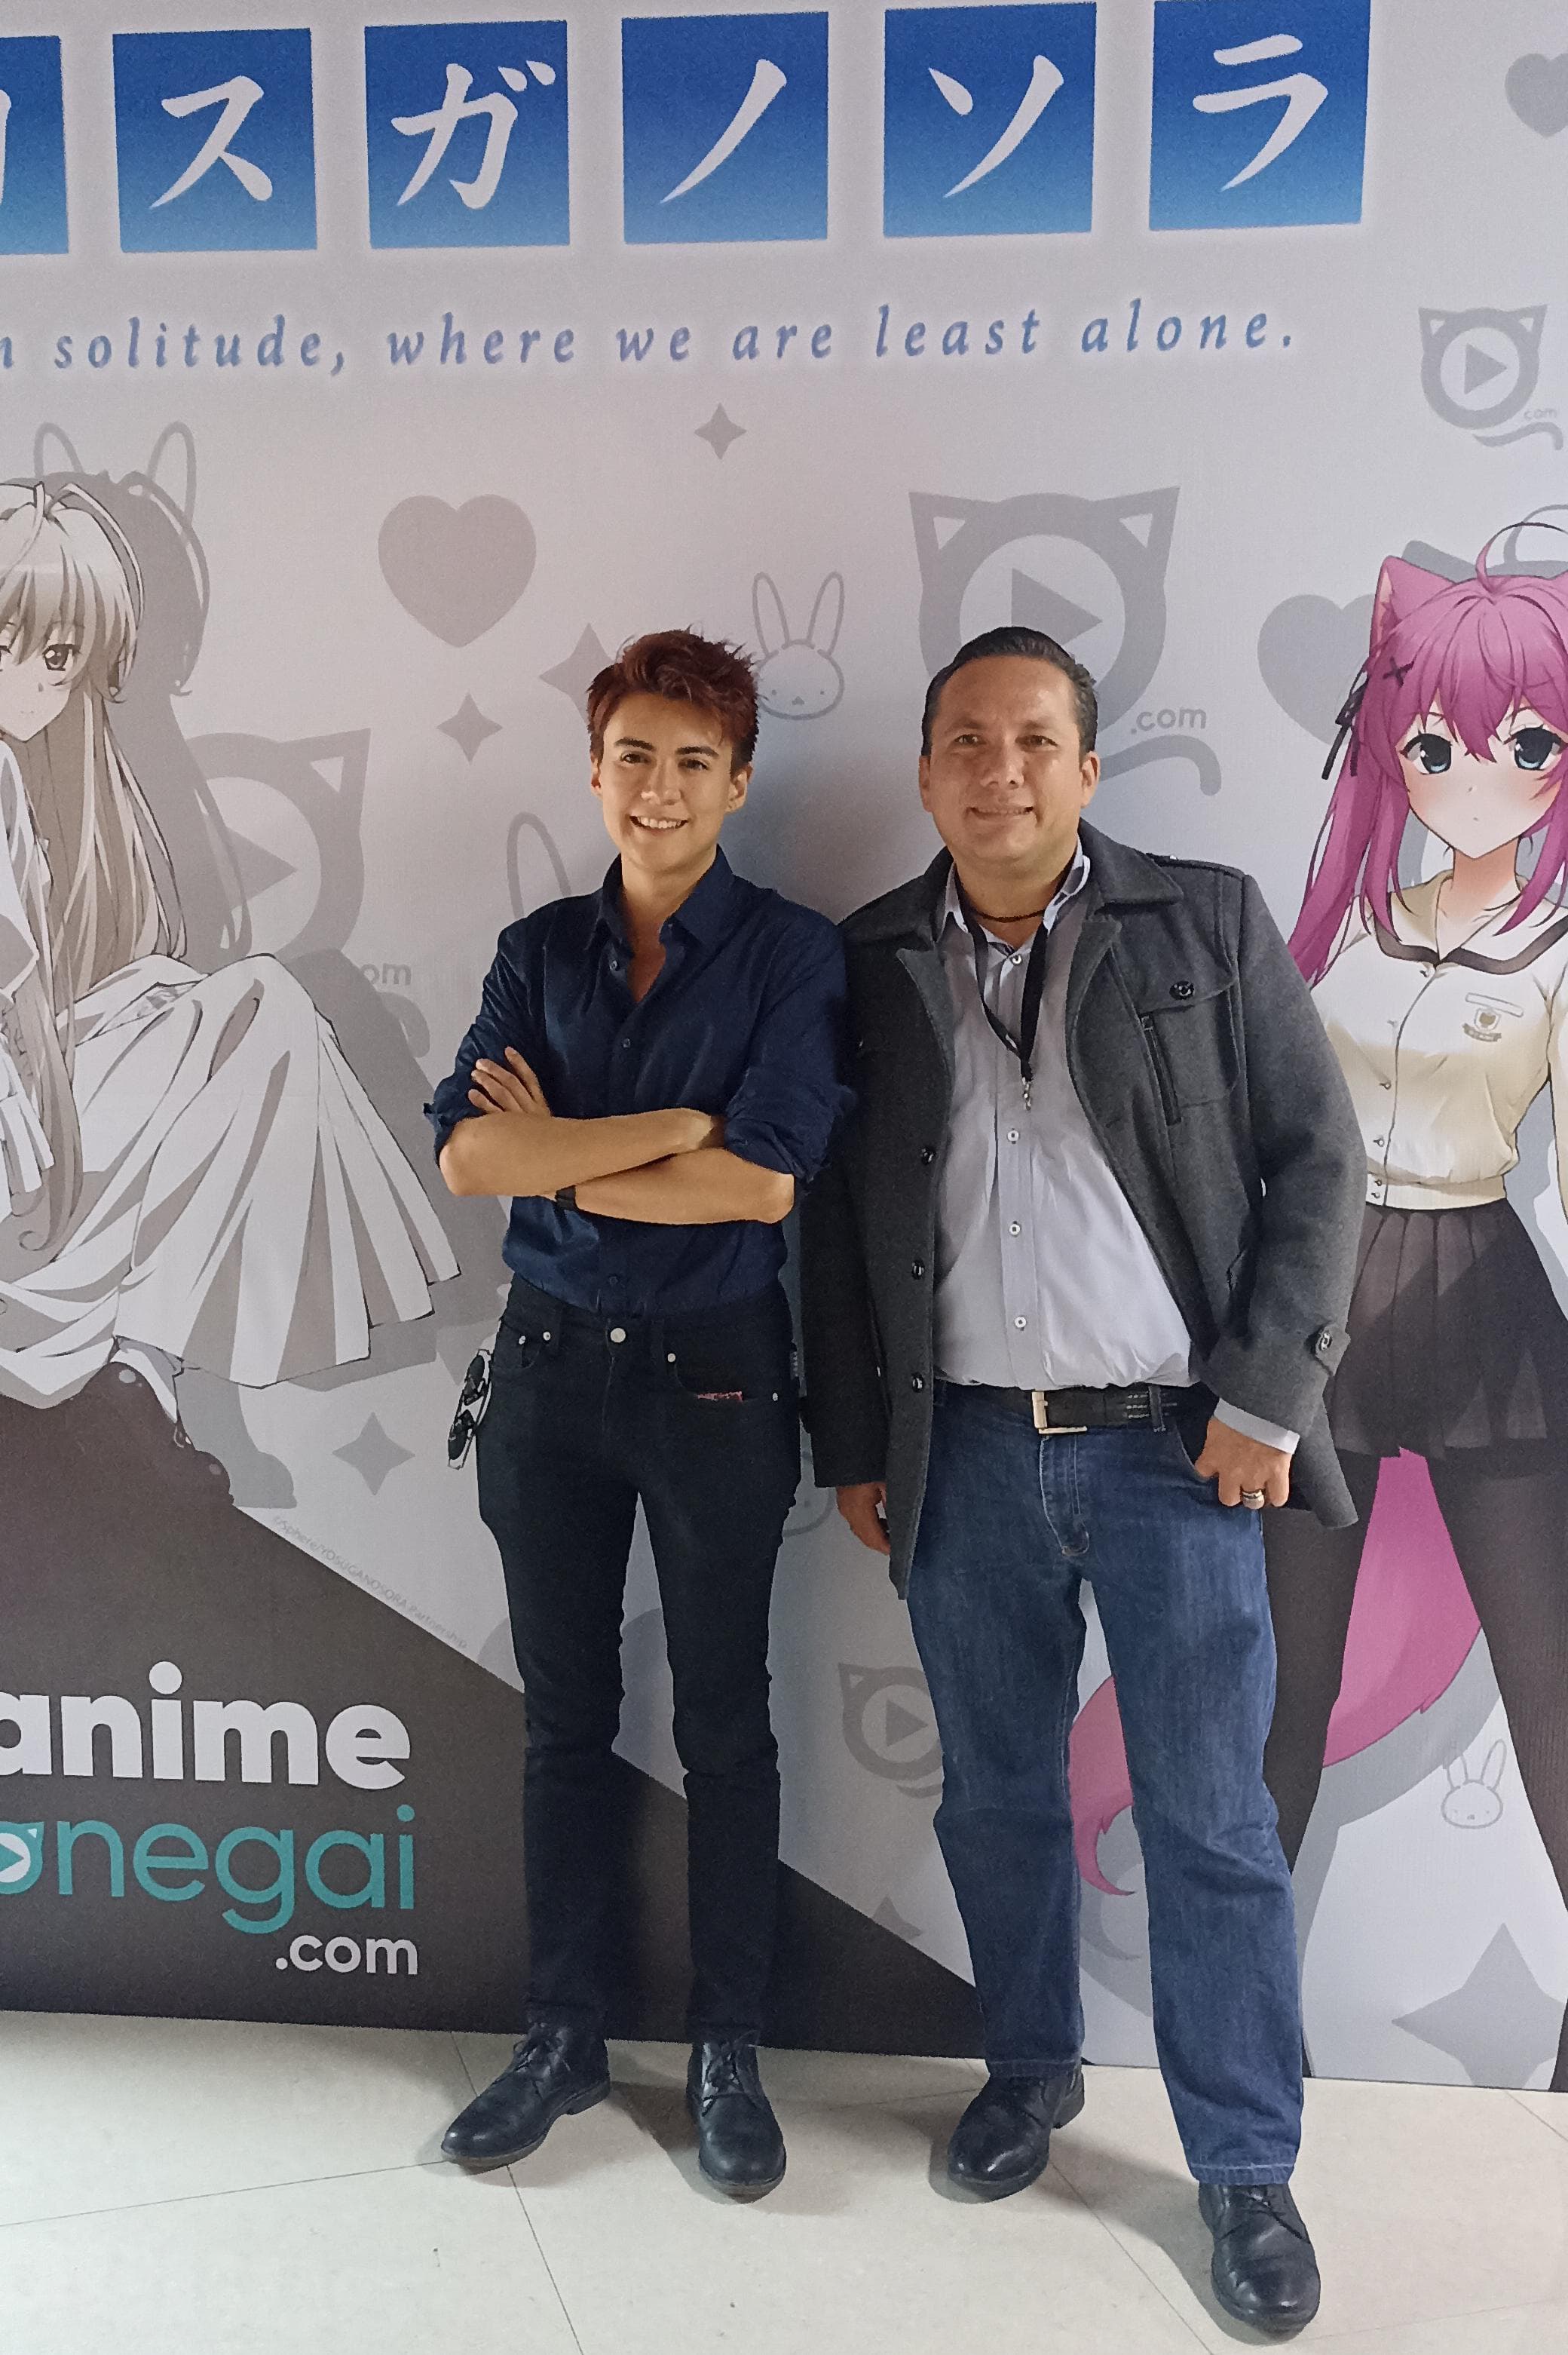 Conferencia con Anime Onegai 5